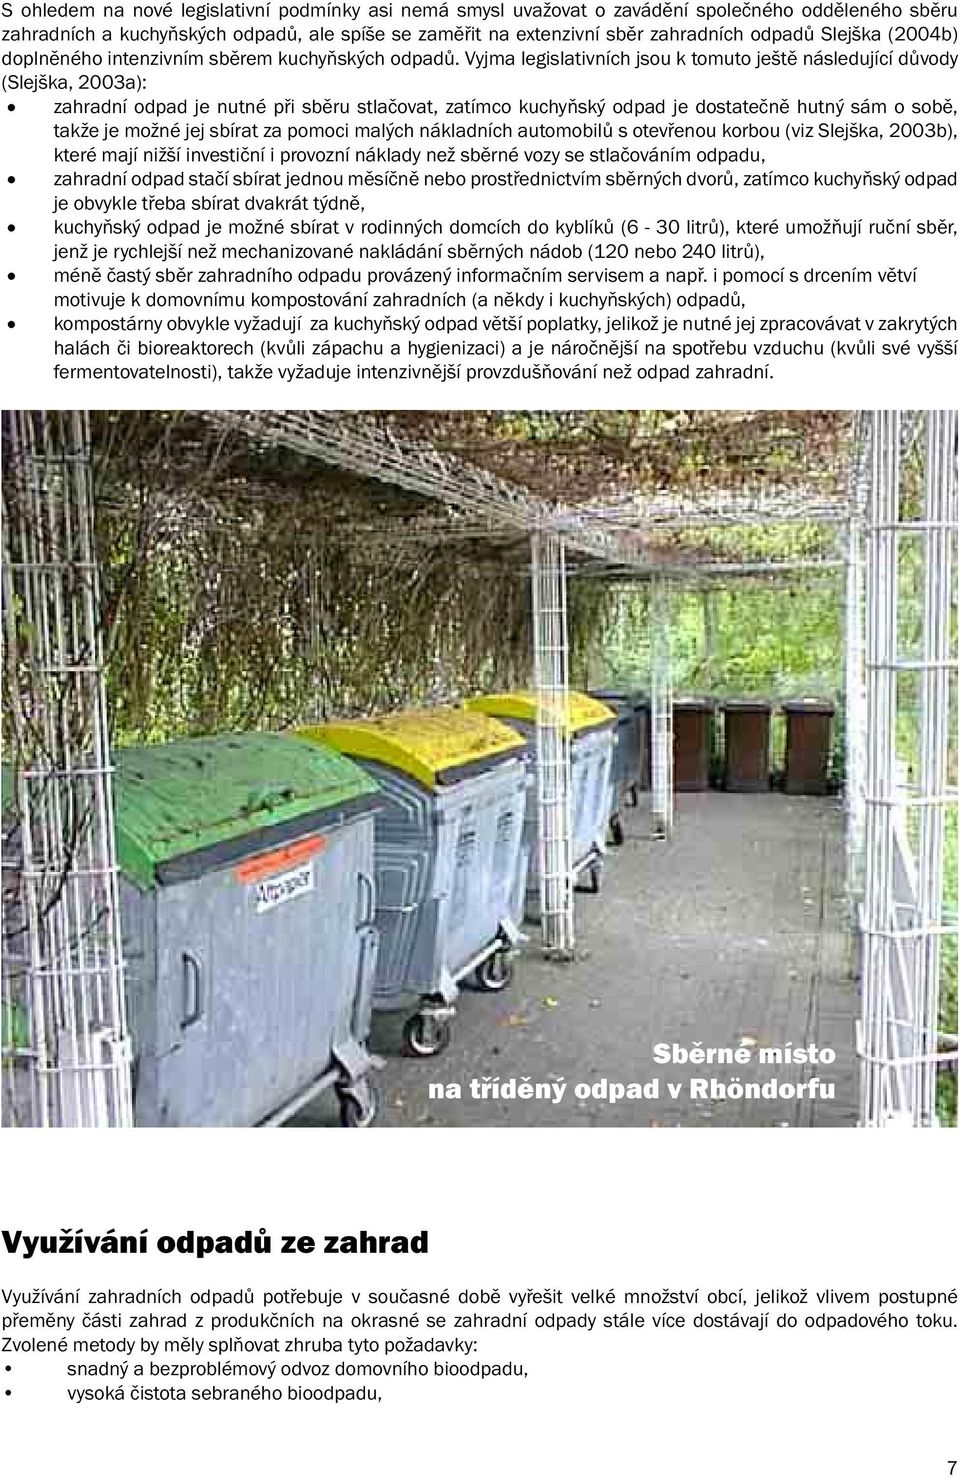 Vyjma legislativních jsou k tomuto ještě následující důvody (Slejška, 2003a): zahradní odpad je nutné při sběru stlačovat, zatímco kuchyňský odpad je dostatečně hutný sám o sobě, takže je možné jej